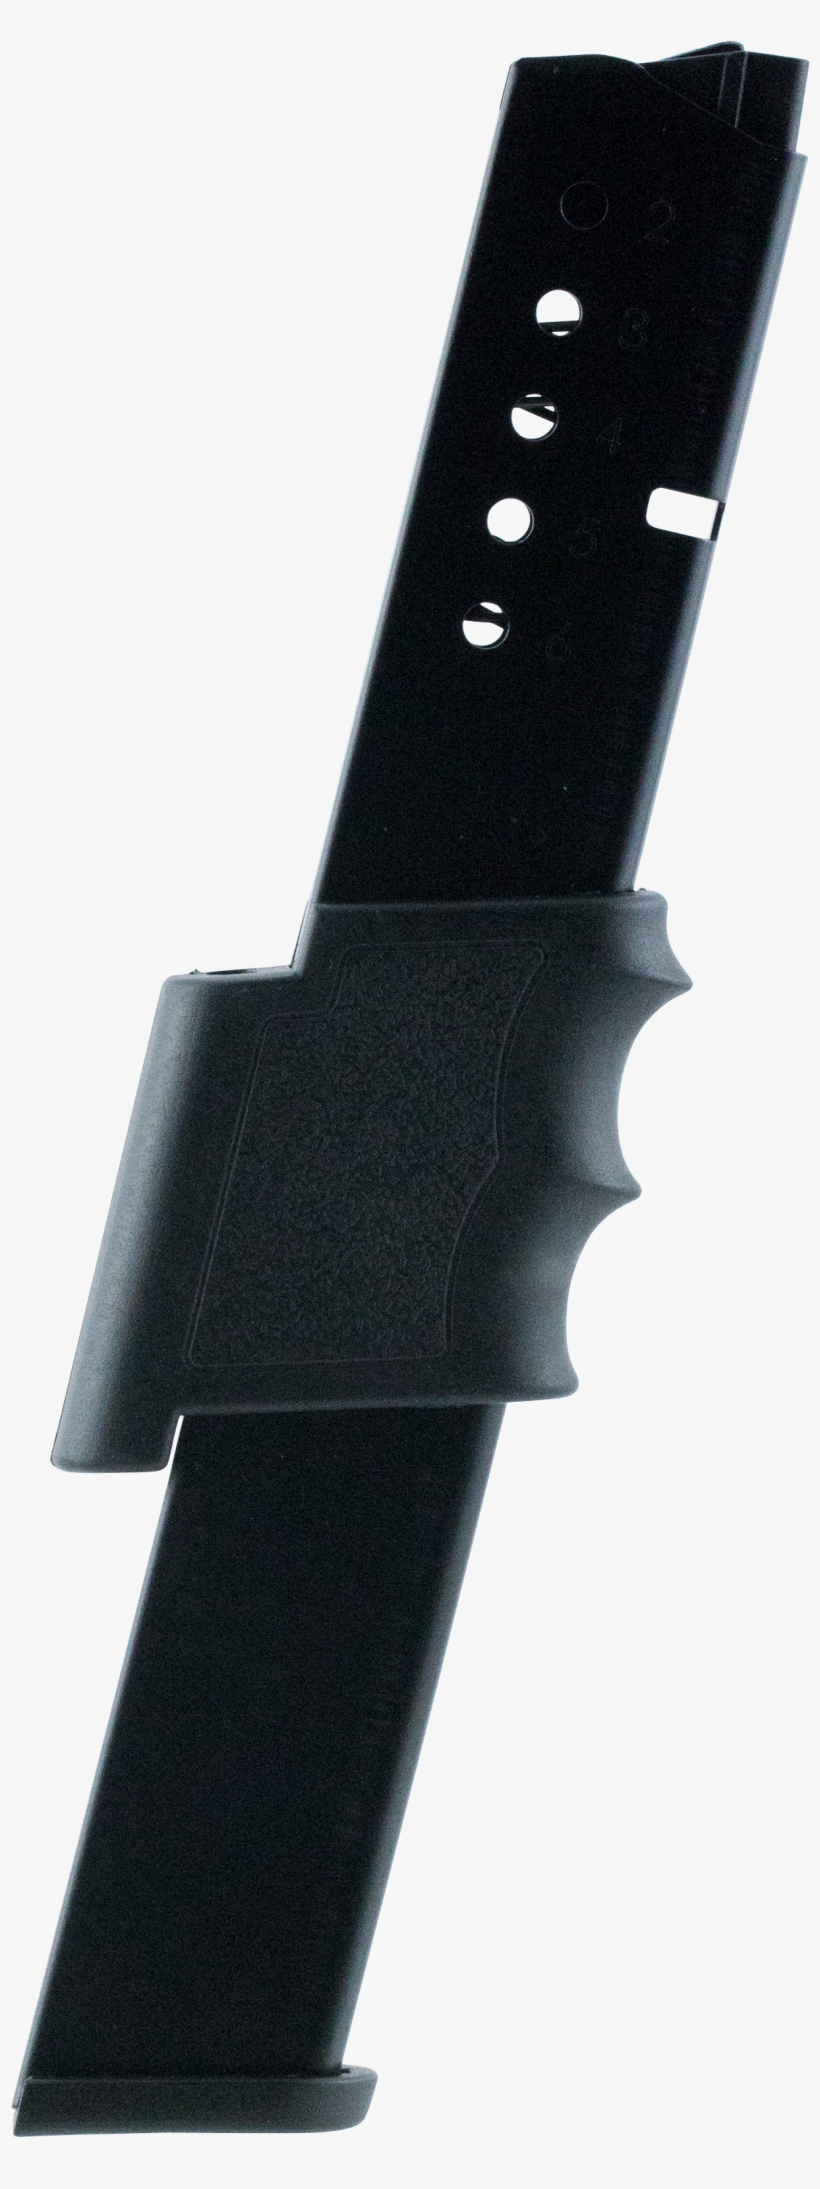 Promag Smia7 S&w Bodyguard 380 Automatic Colt Pistol - Strap, transparent png #5877569